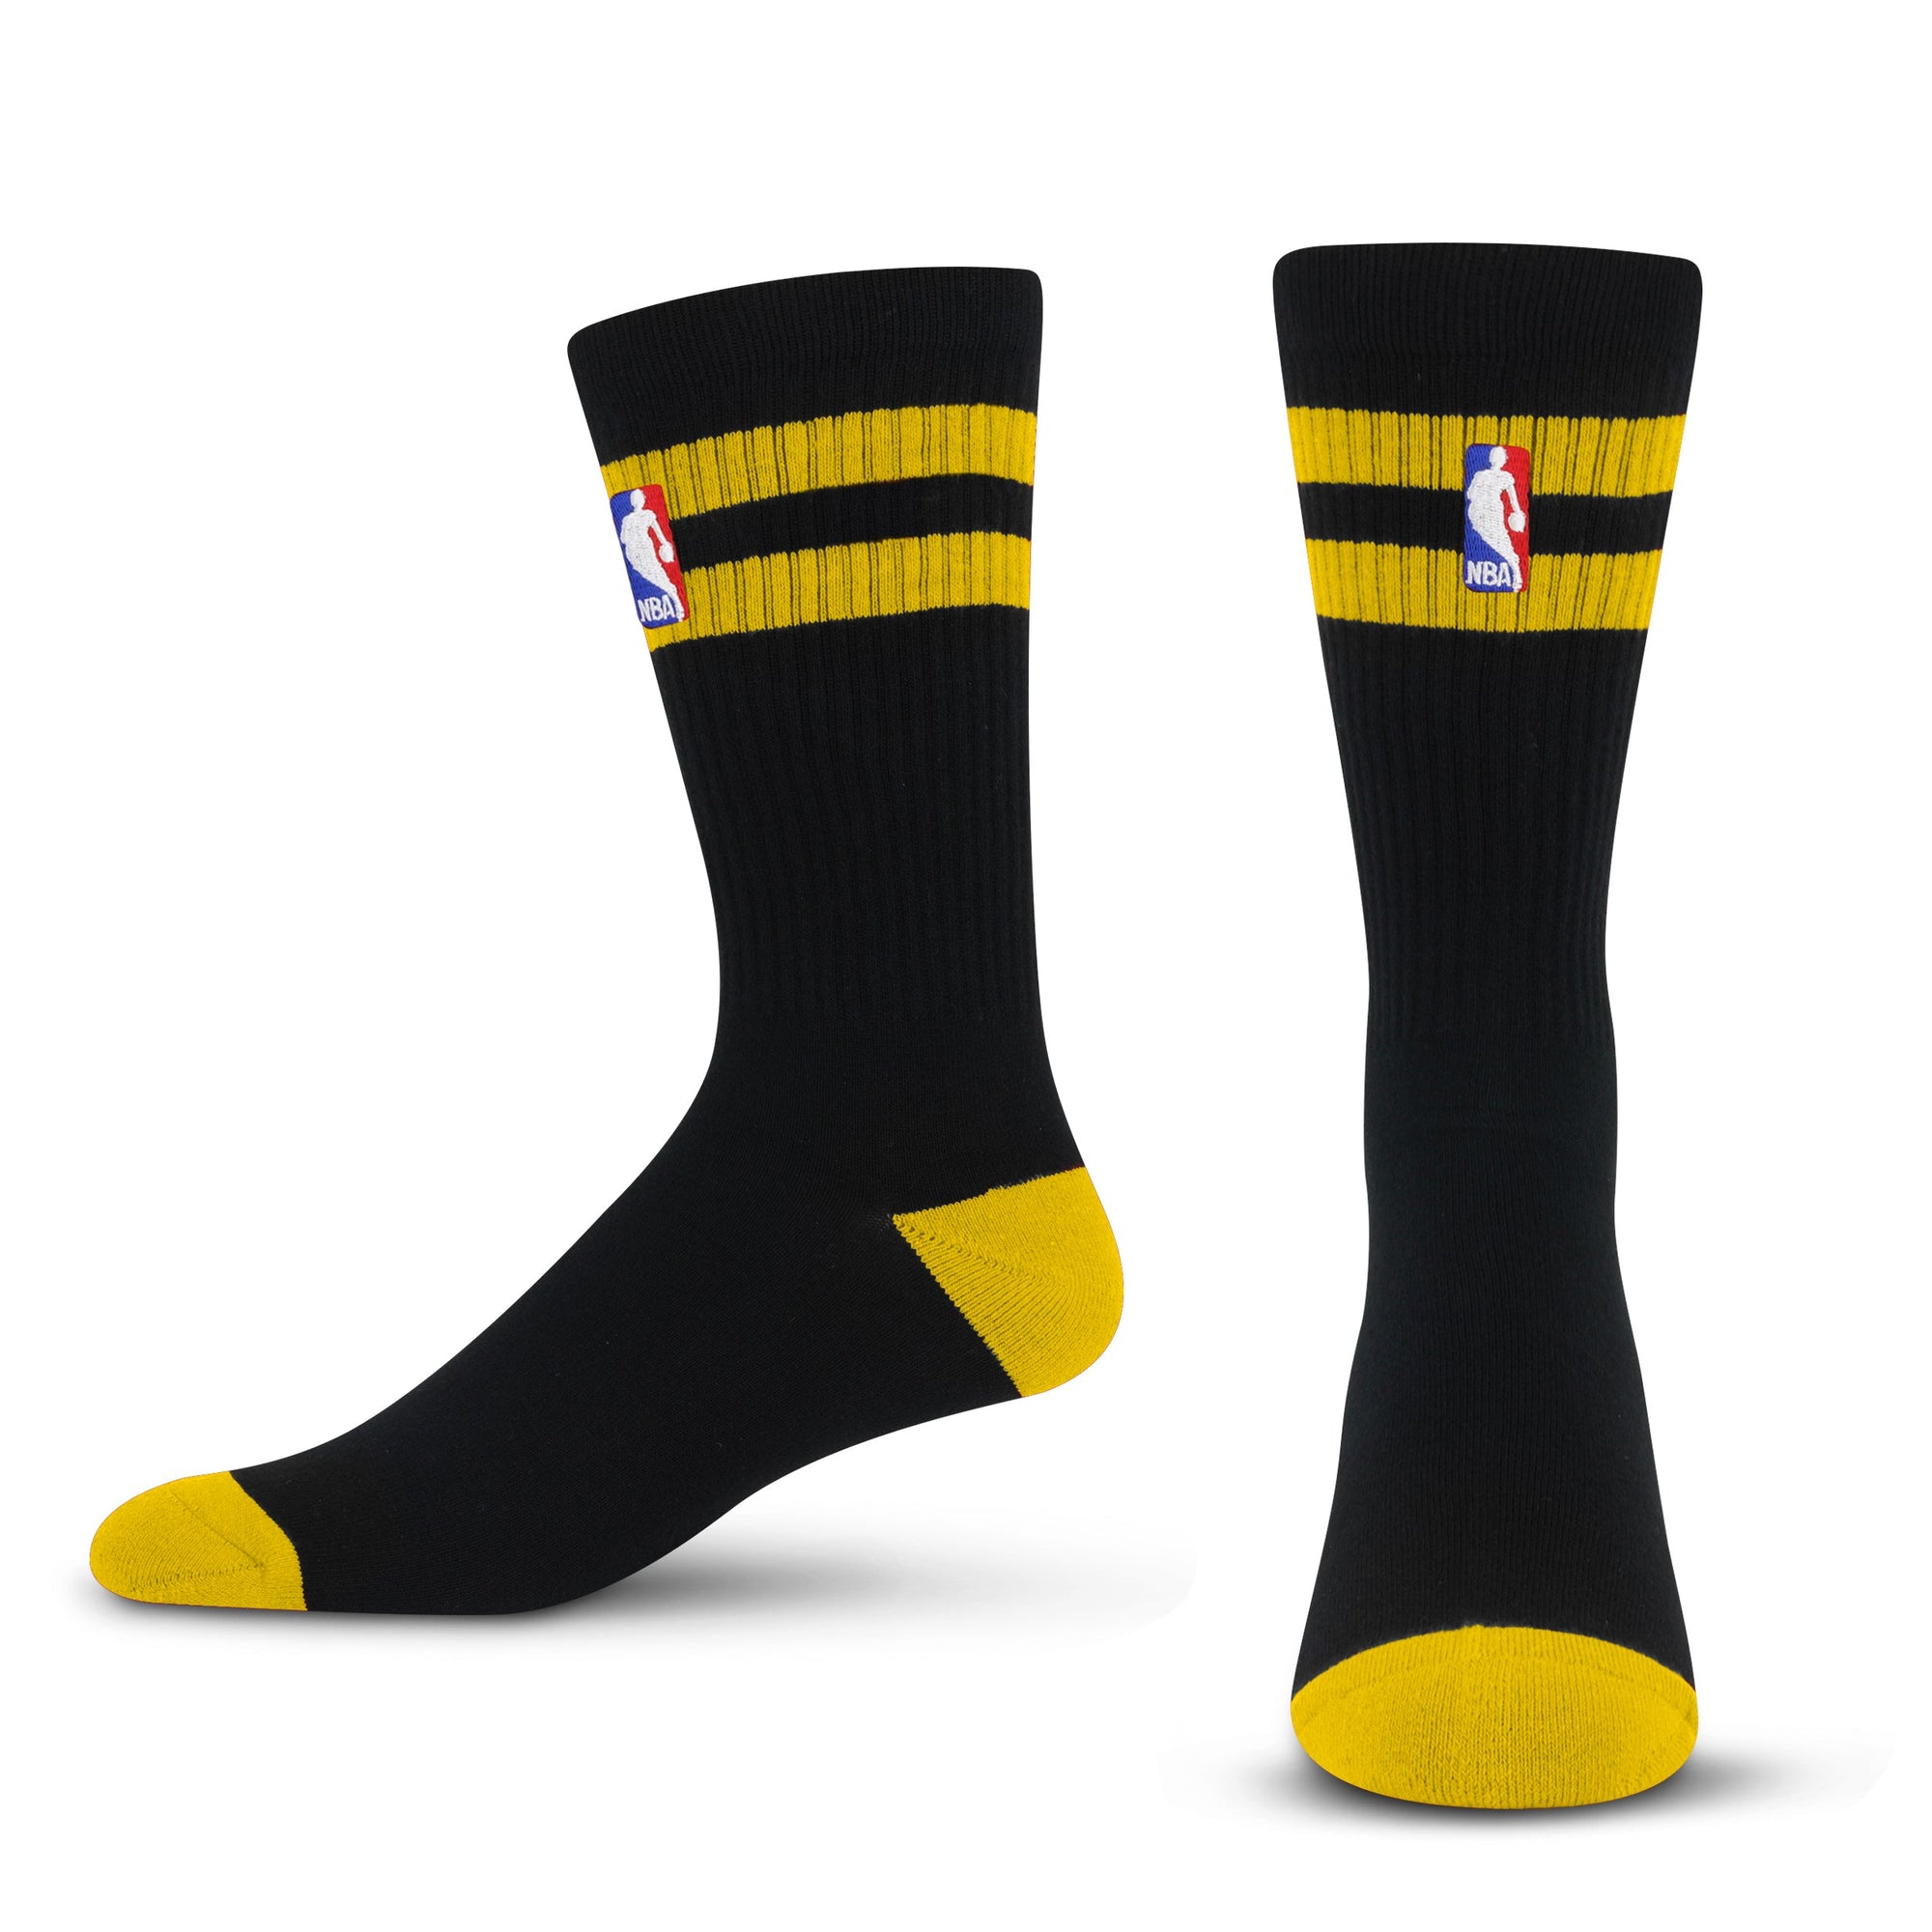 NBA Logoman 2 Stripe - Gold